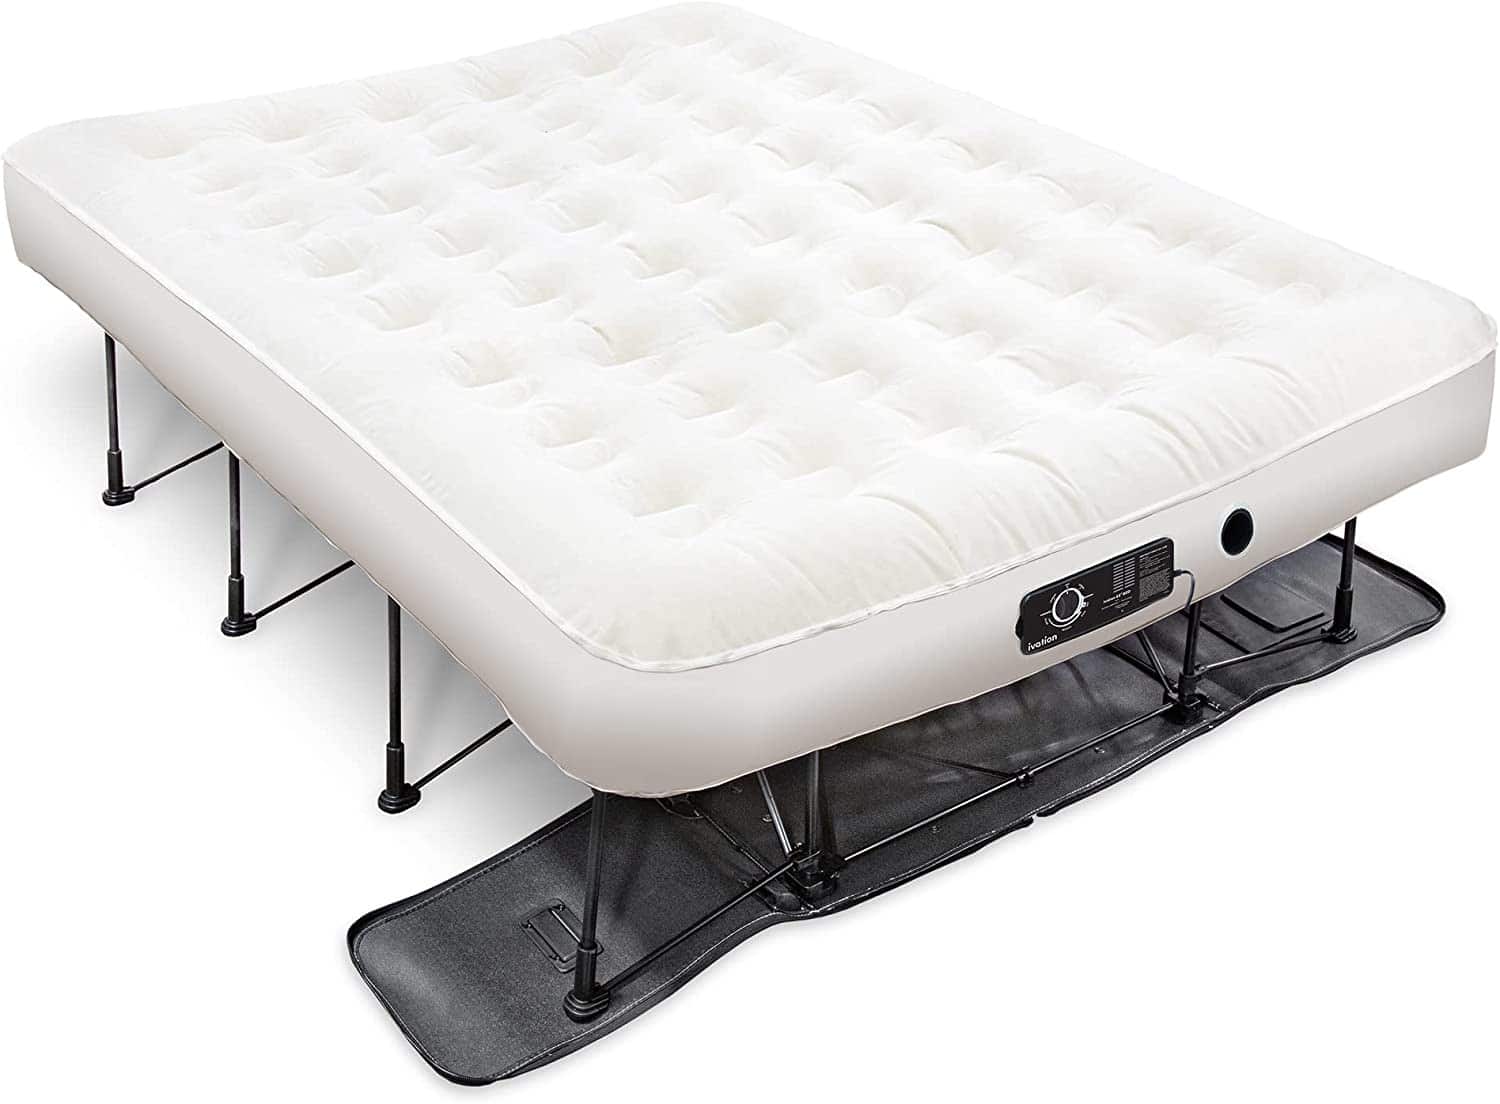 ivation ez-bed air mattress